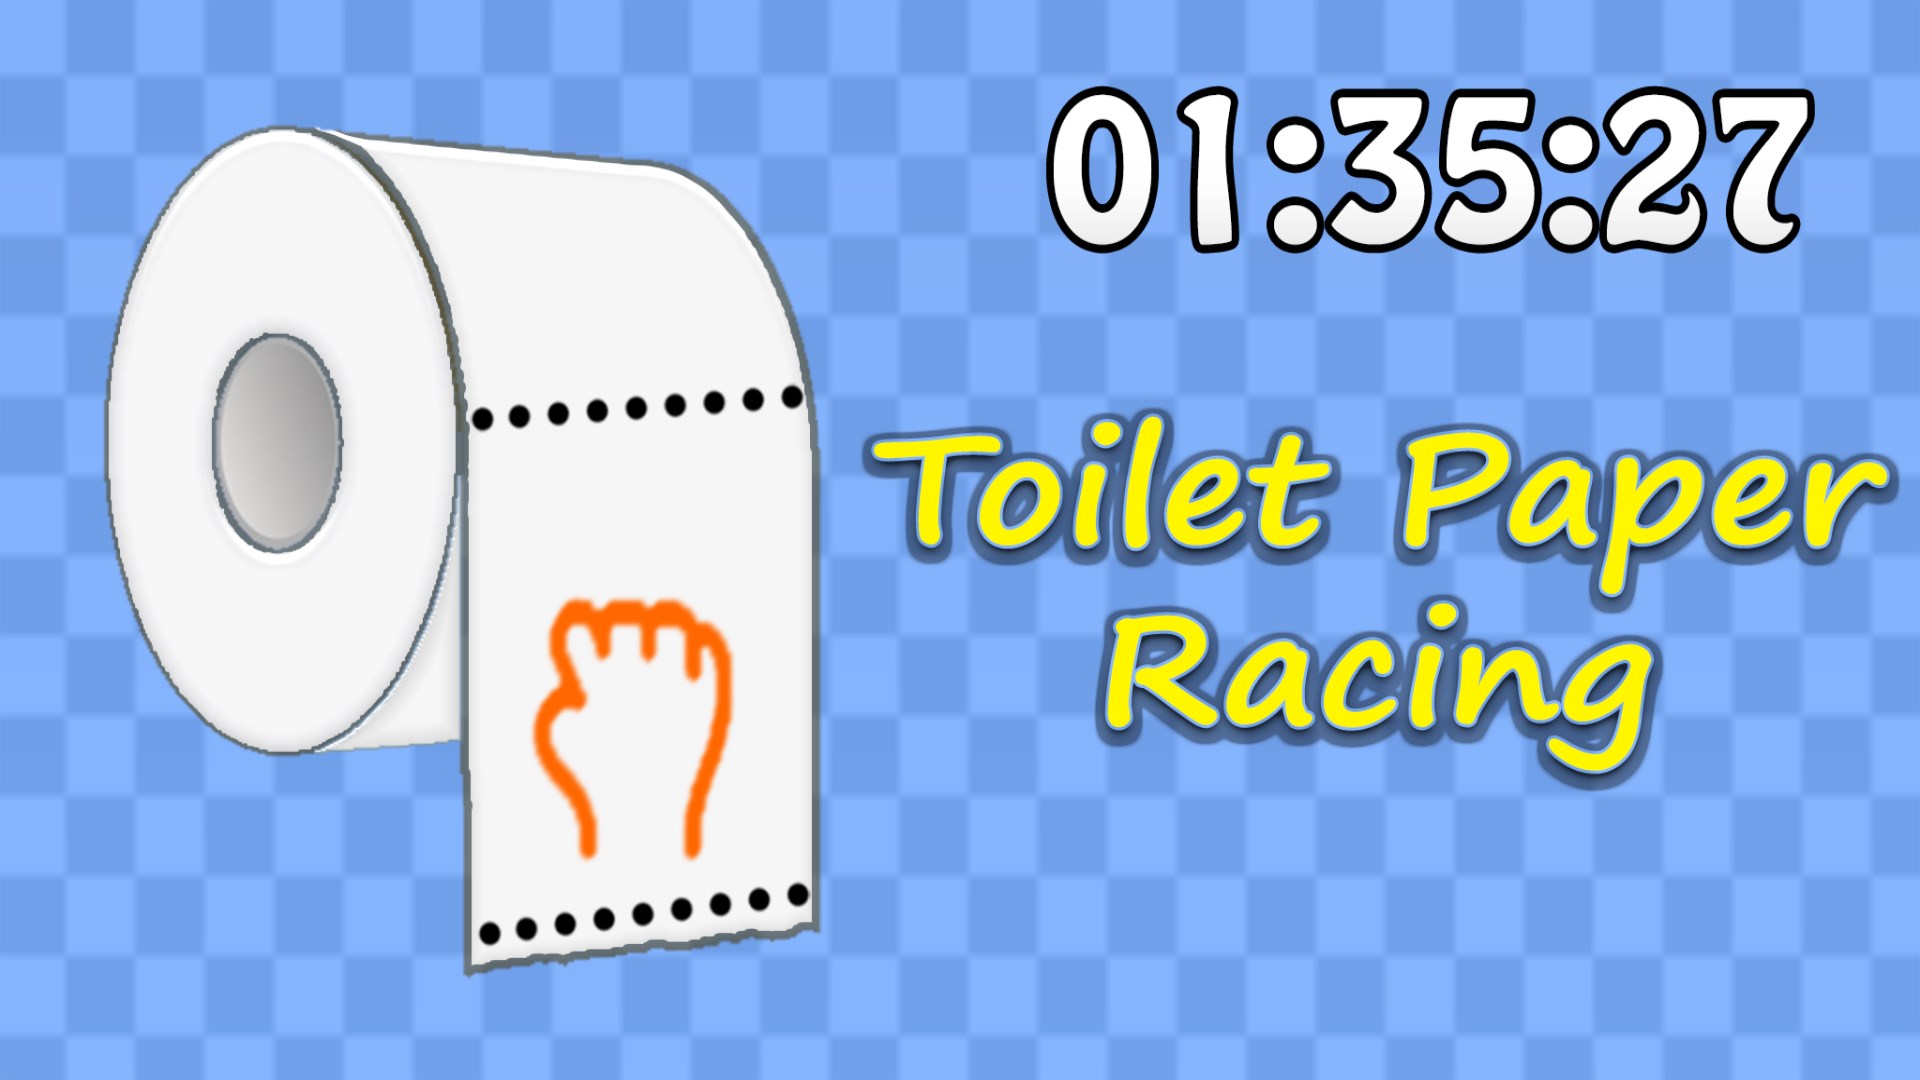 Игра том из бумаги. Игра с туалетной бумагой. Туалетная бумага Microsoft. Игры в туалете из бумаги. Edet Toilet paper.